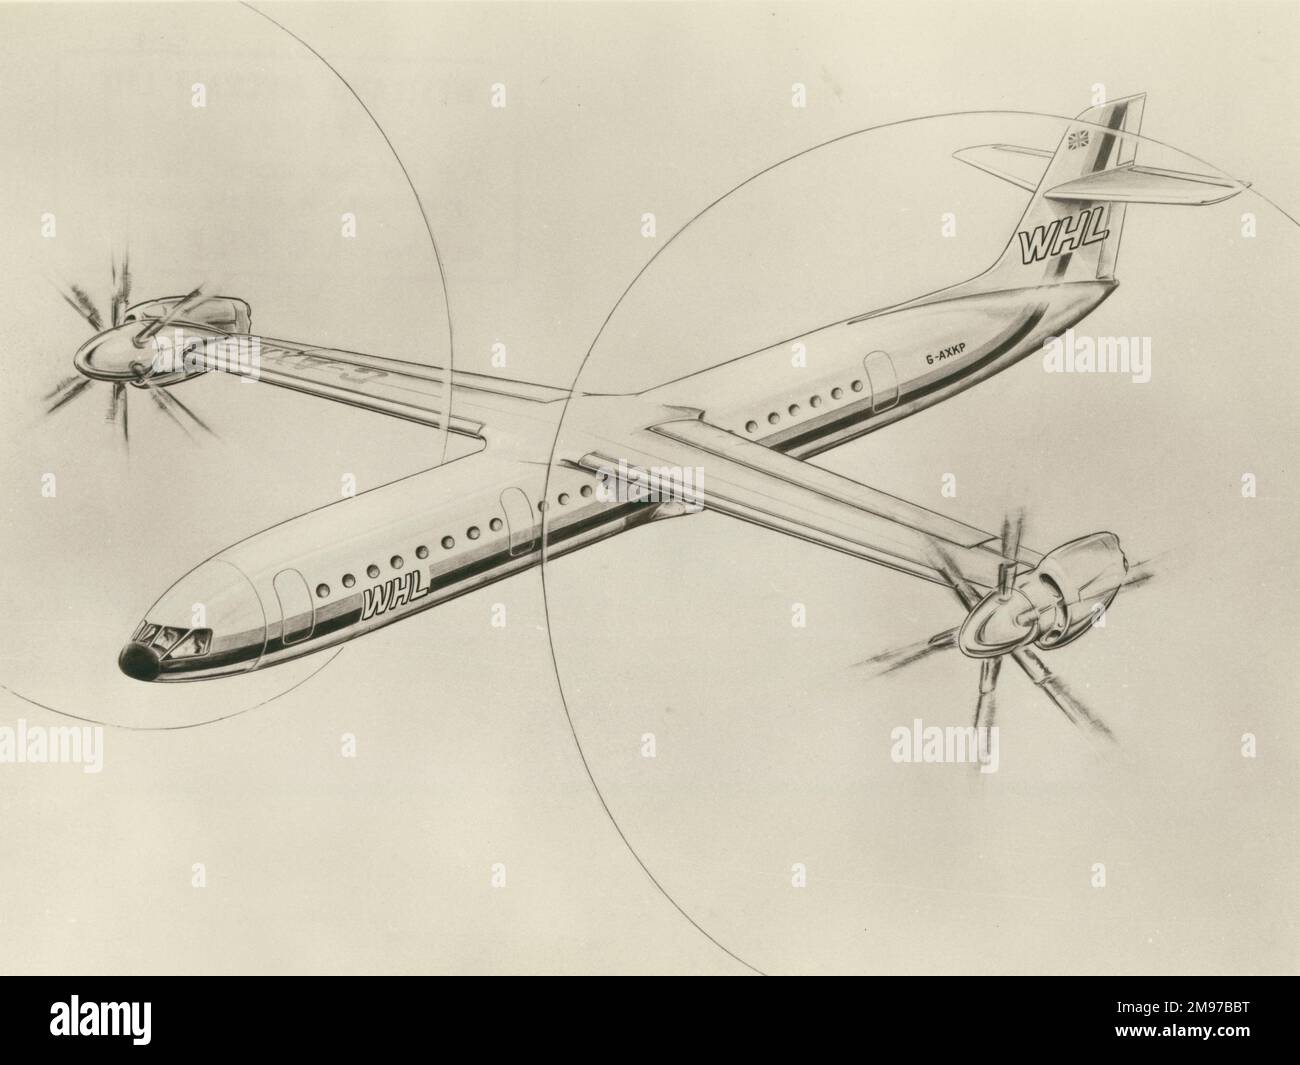 Le grand concept de rotor inclinable WE-02 de Westland peut accueillir 80 passagers. Juillet 1968. Banque D'Images